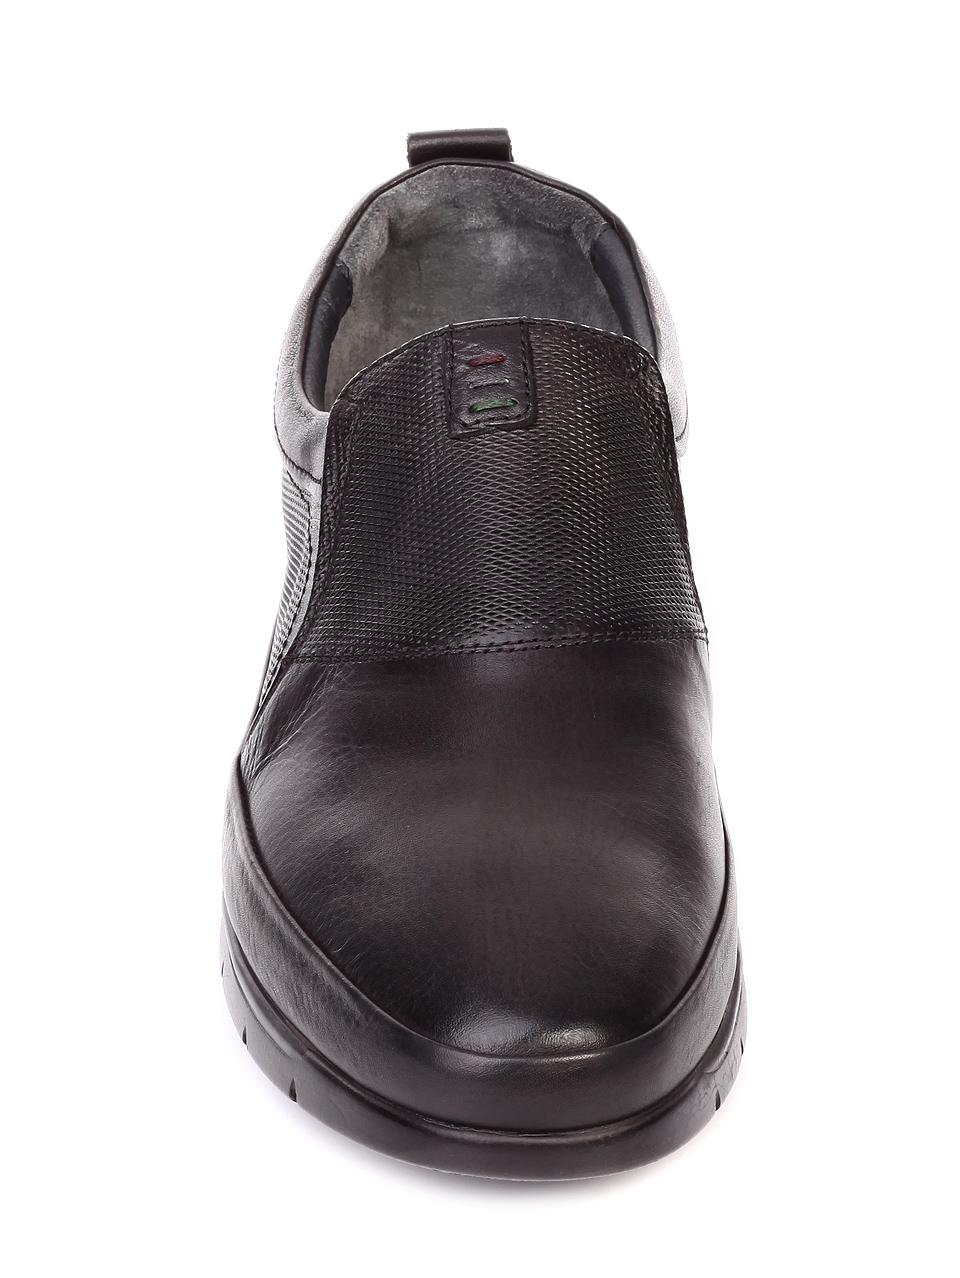 Ежедневни мъжки обувки от естествена кожа 6568 black